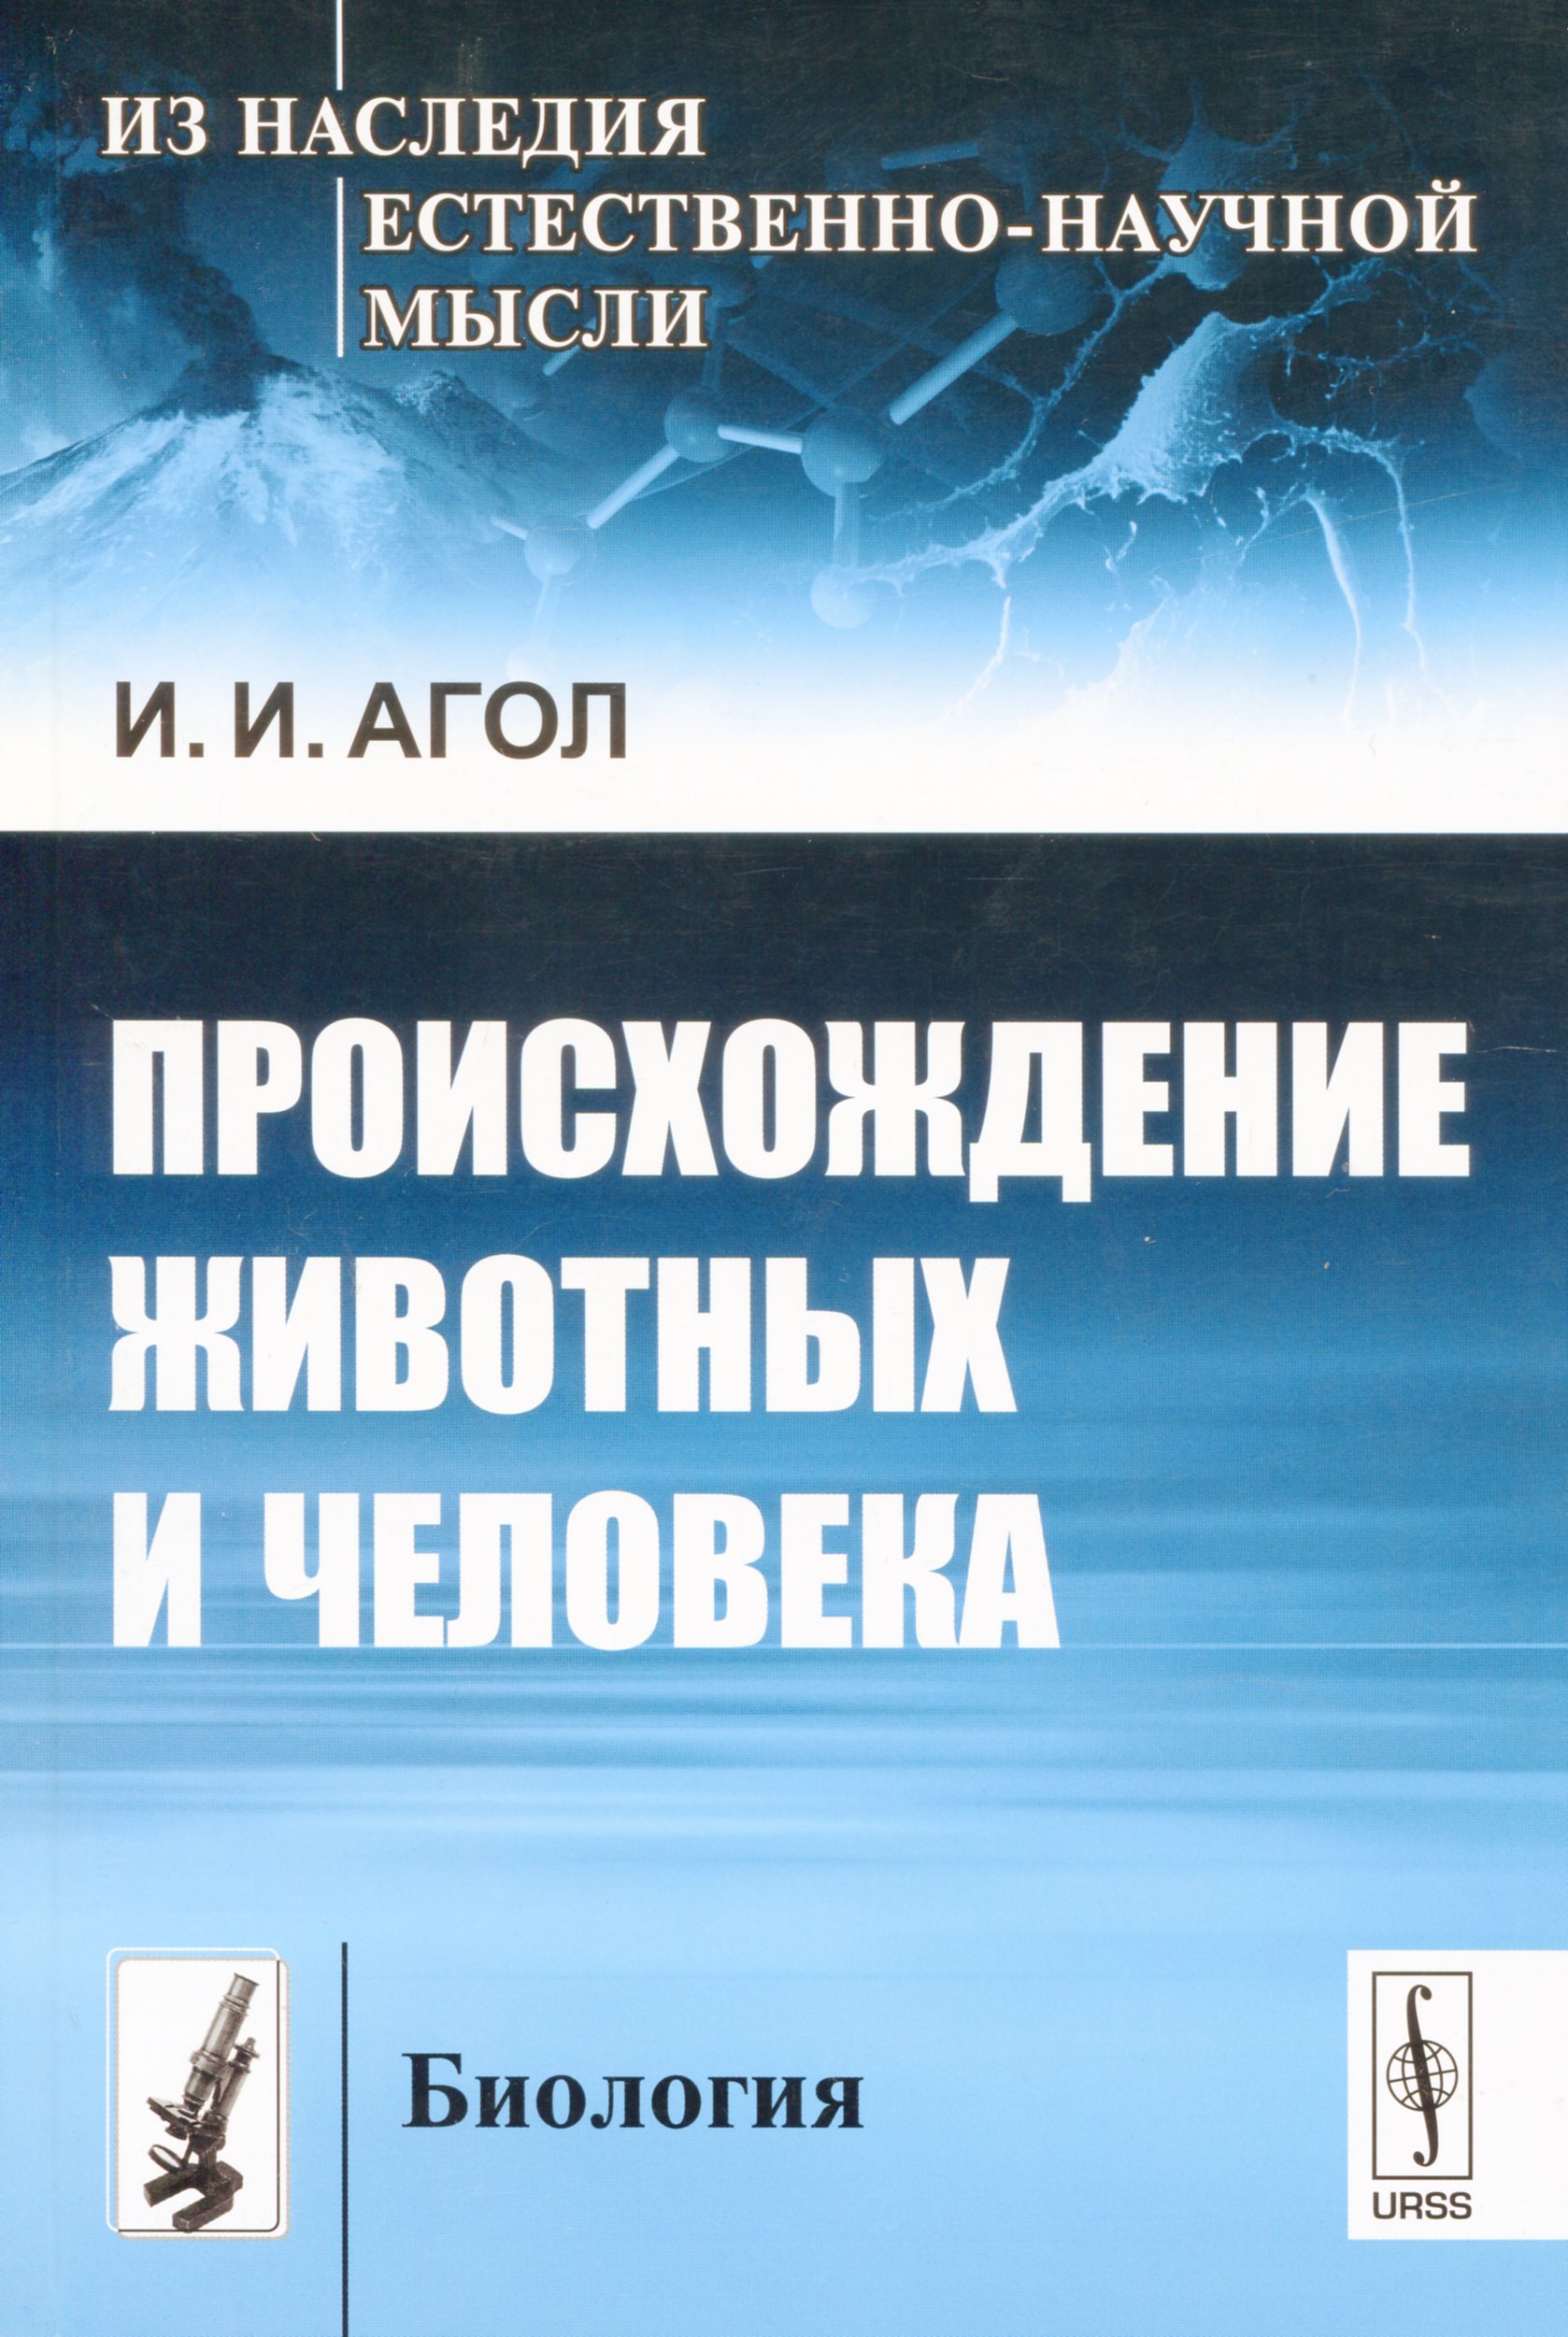 Агол И. И. Происхождение животных и человека. М.: URSS, 2013. 128 с.